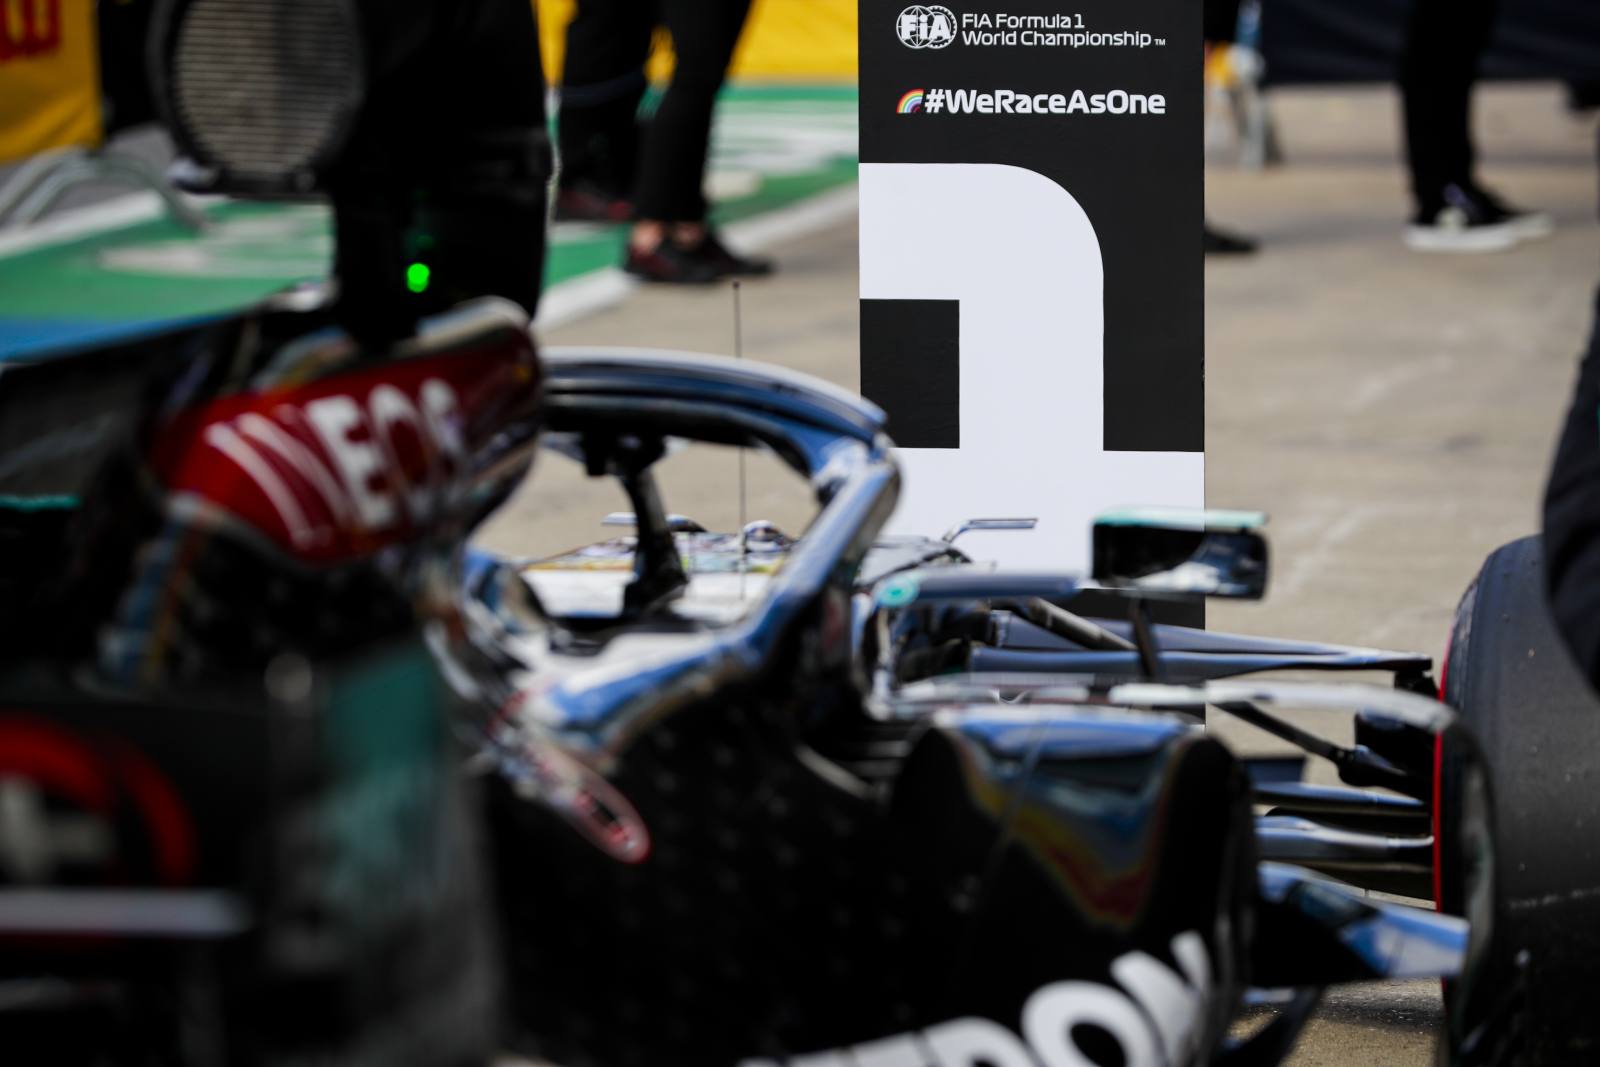 A pole position para o GP da Inglaterra ficou com Lewis Hamilton, a 91ª vez na Fórmula 1